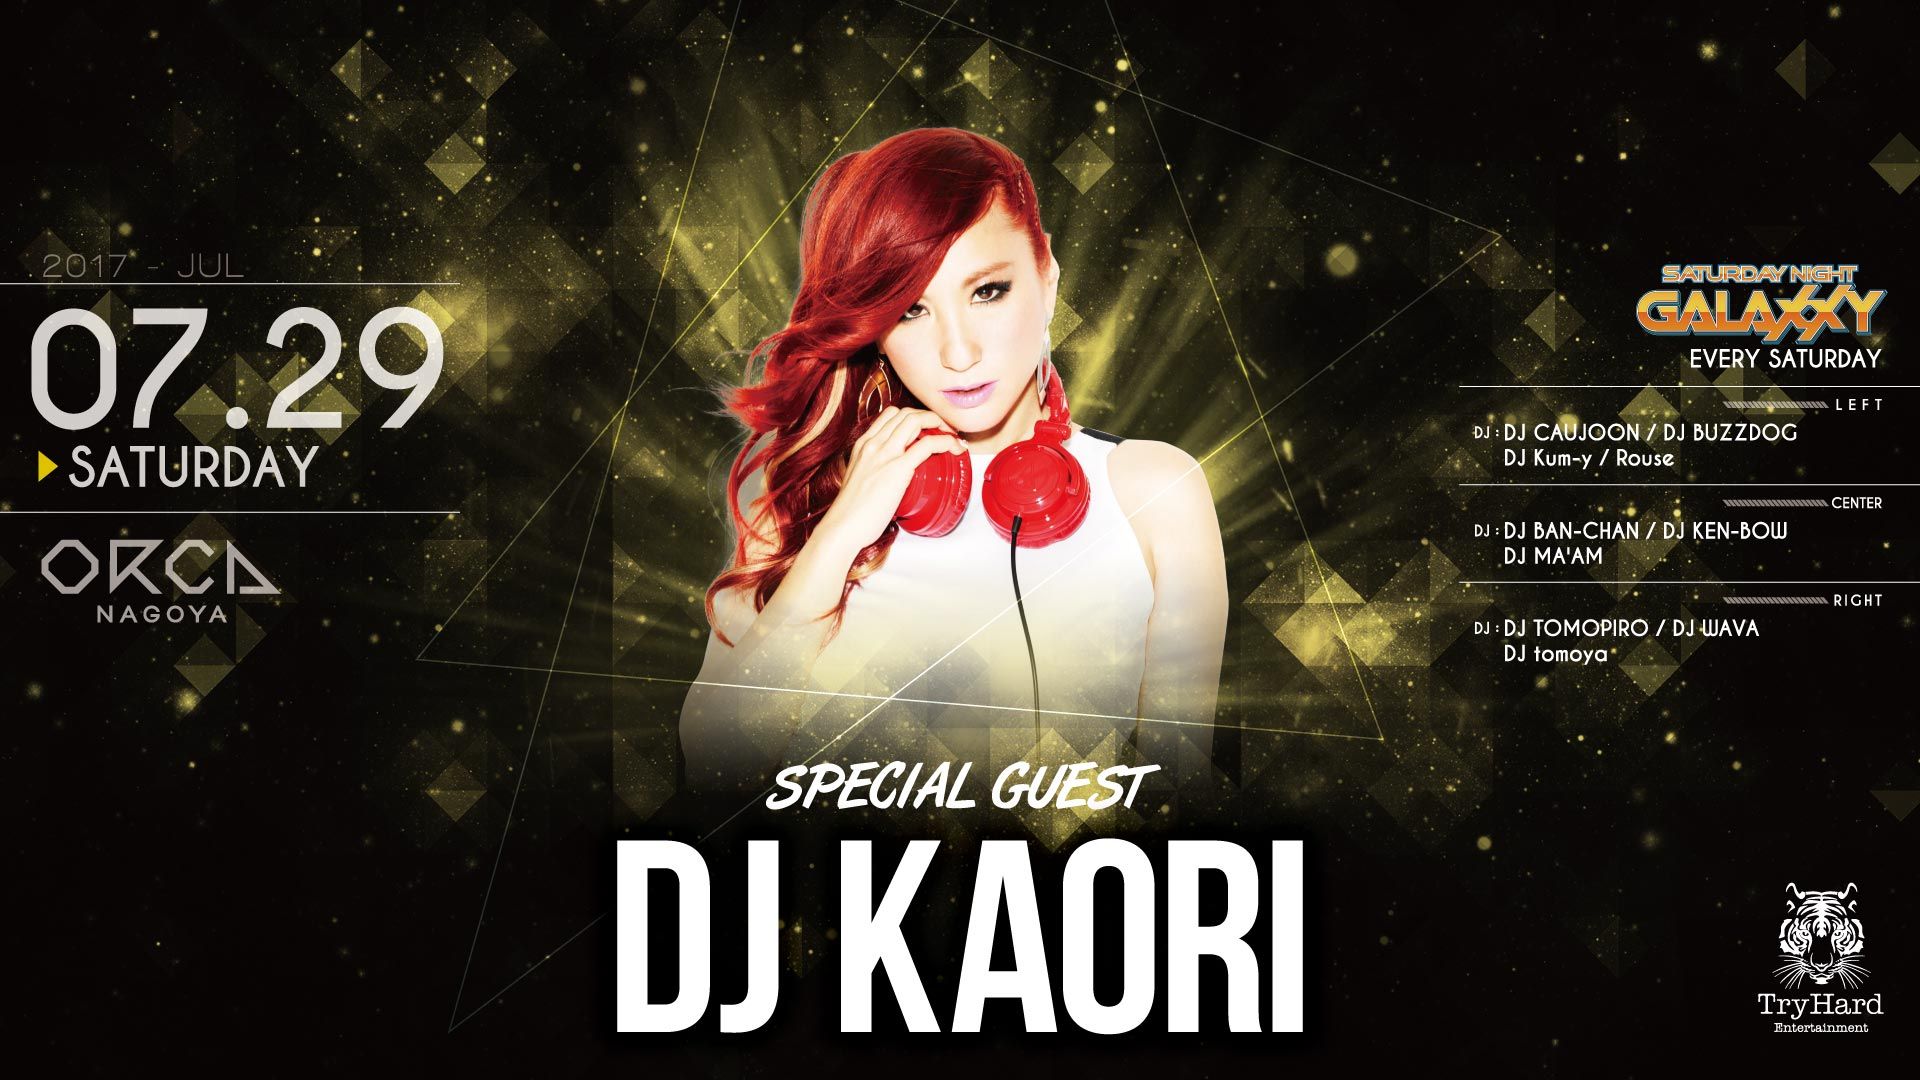 SPECIAL GUEST : DJ KAORI / Saturday Night Galaxxy